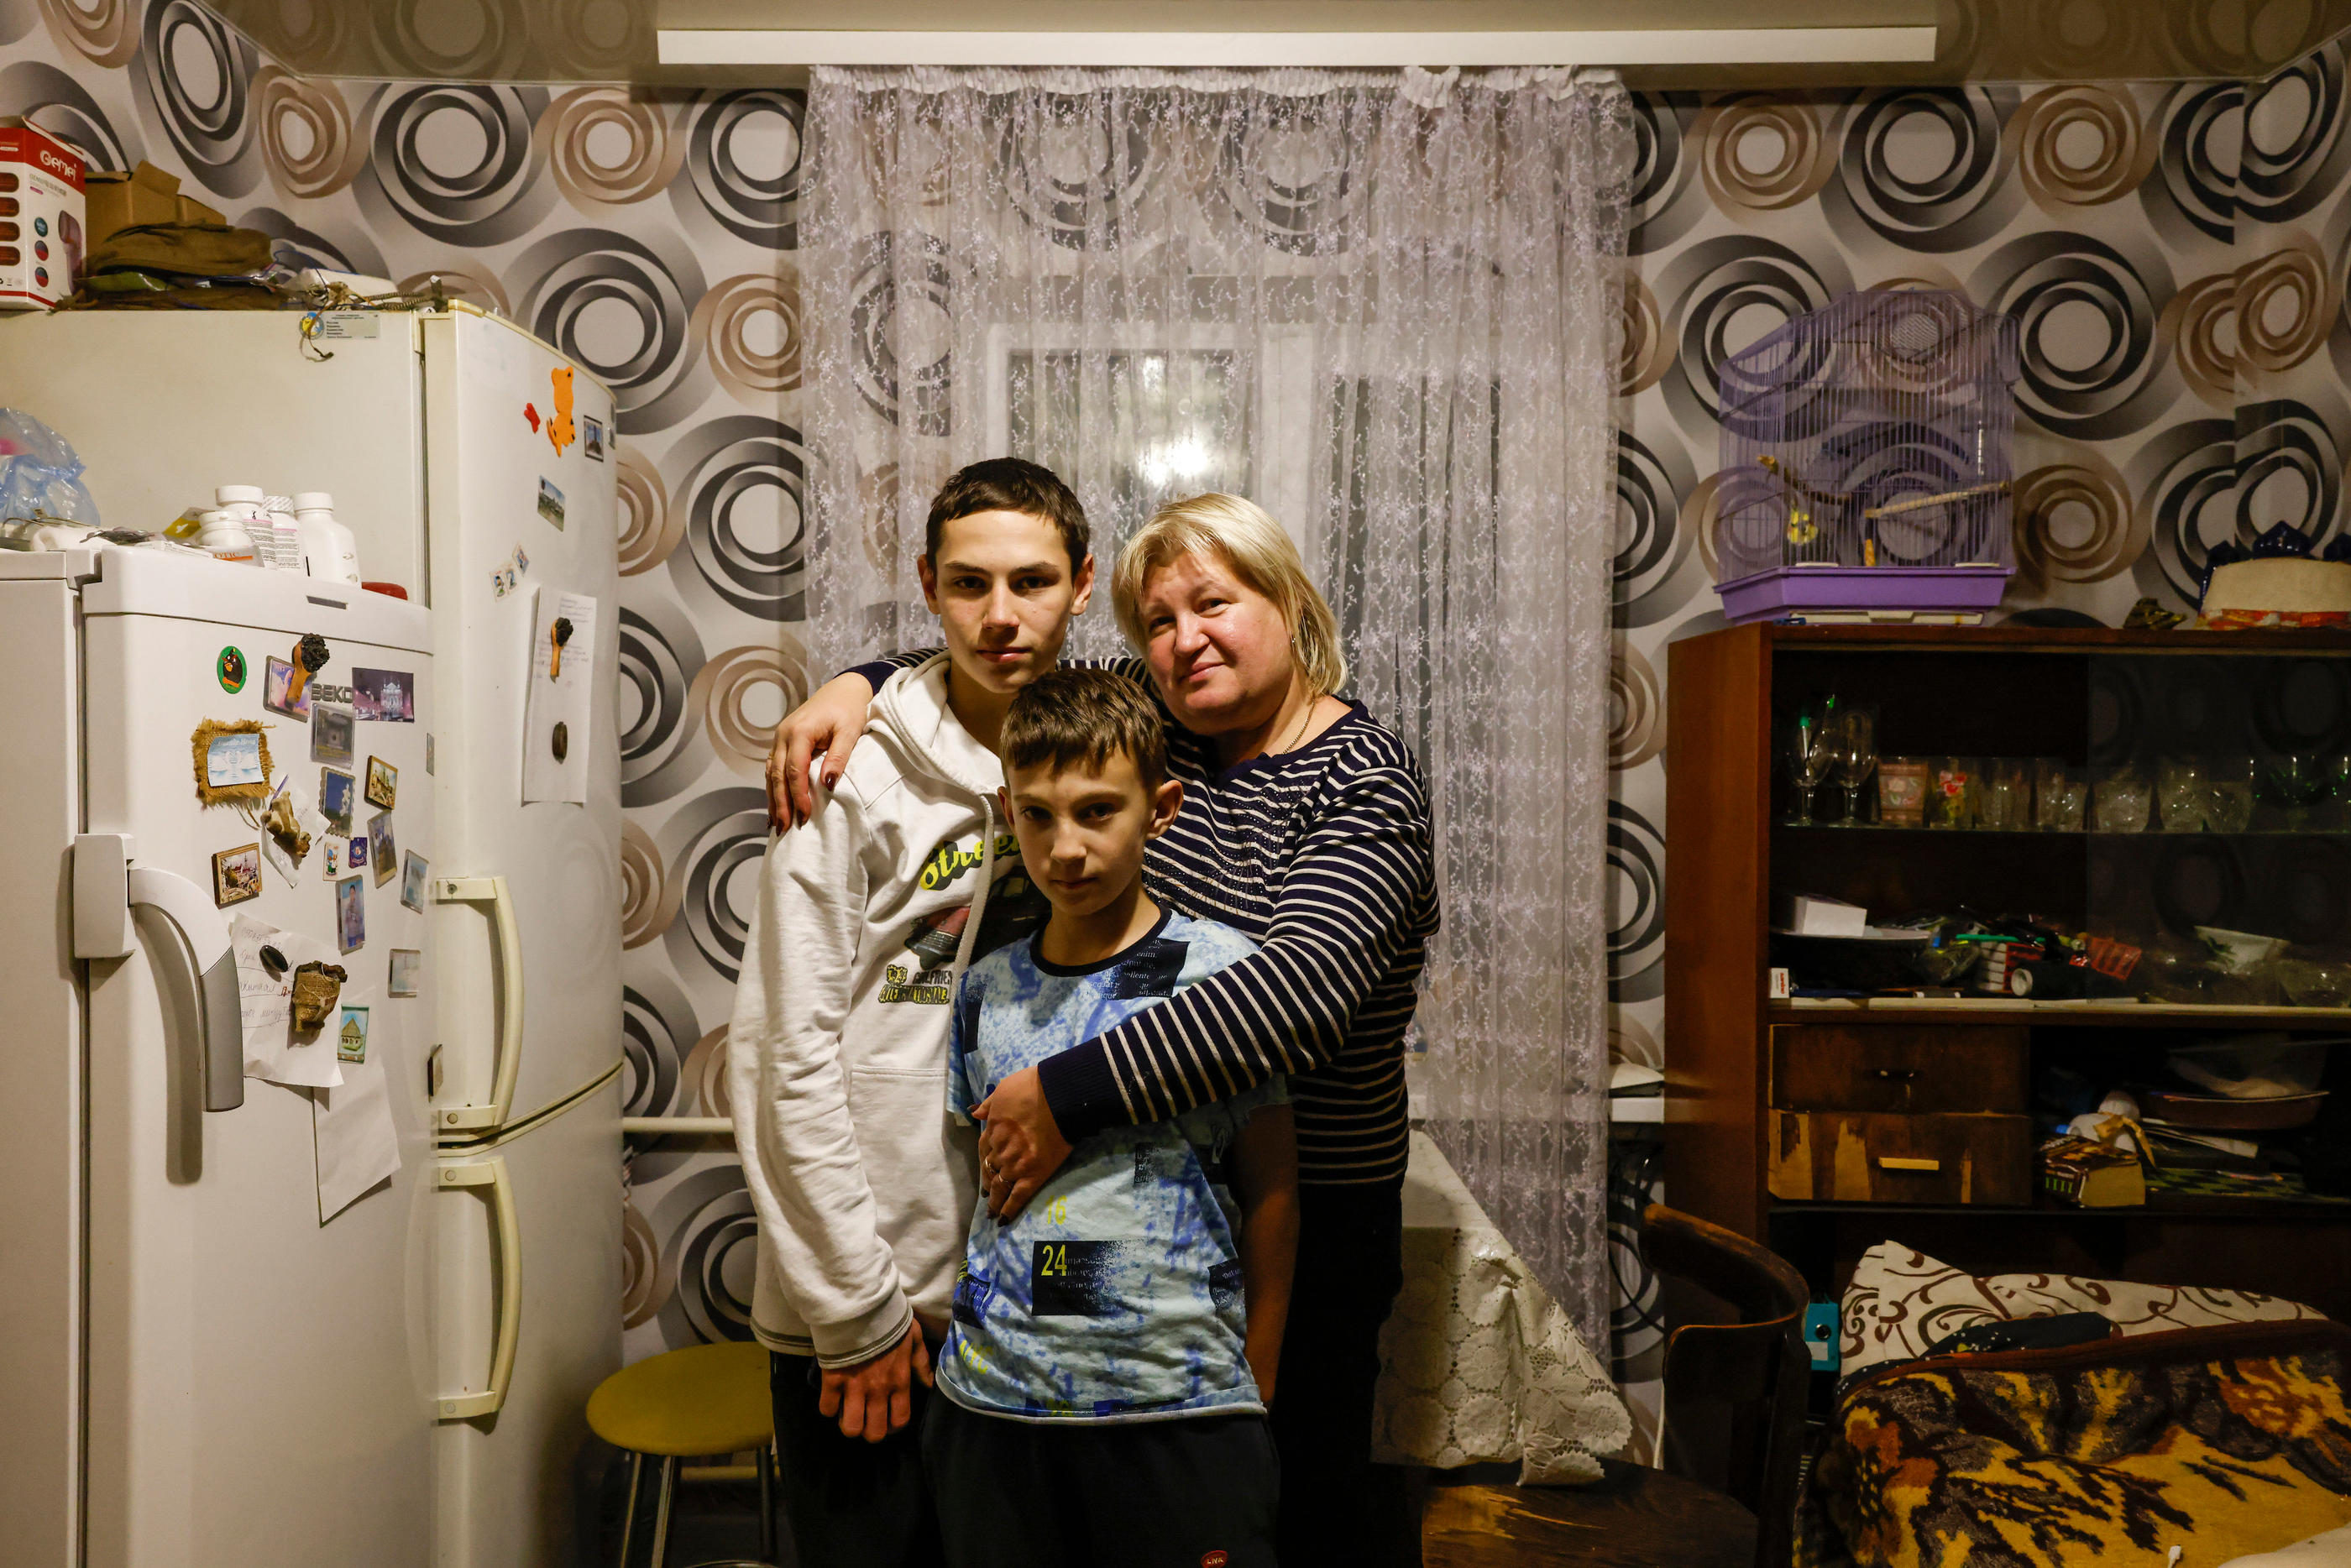 Liudmila a dû elle-même aller chercher ses deux fils, Yevgen, 16 ans, et Kirill, 10 ans, en Russie où ils étaient partis en camp de vacances. LP/Olivier Corsan